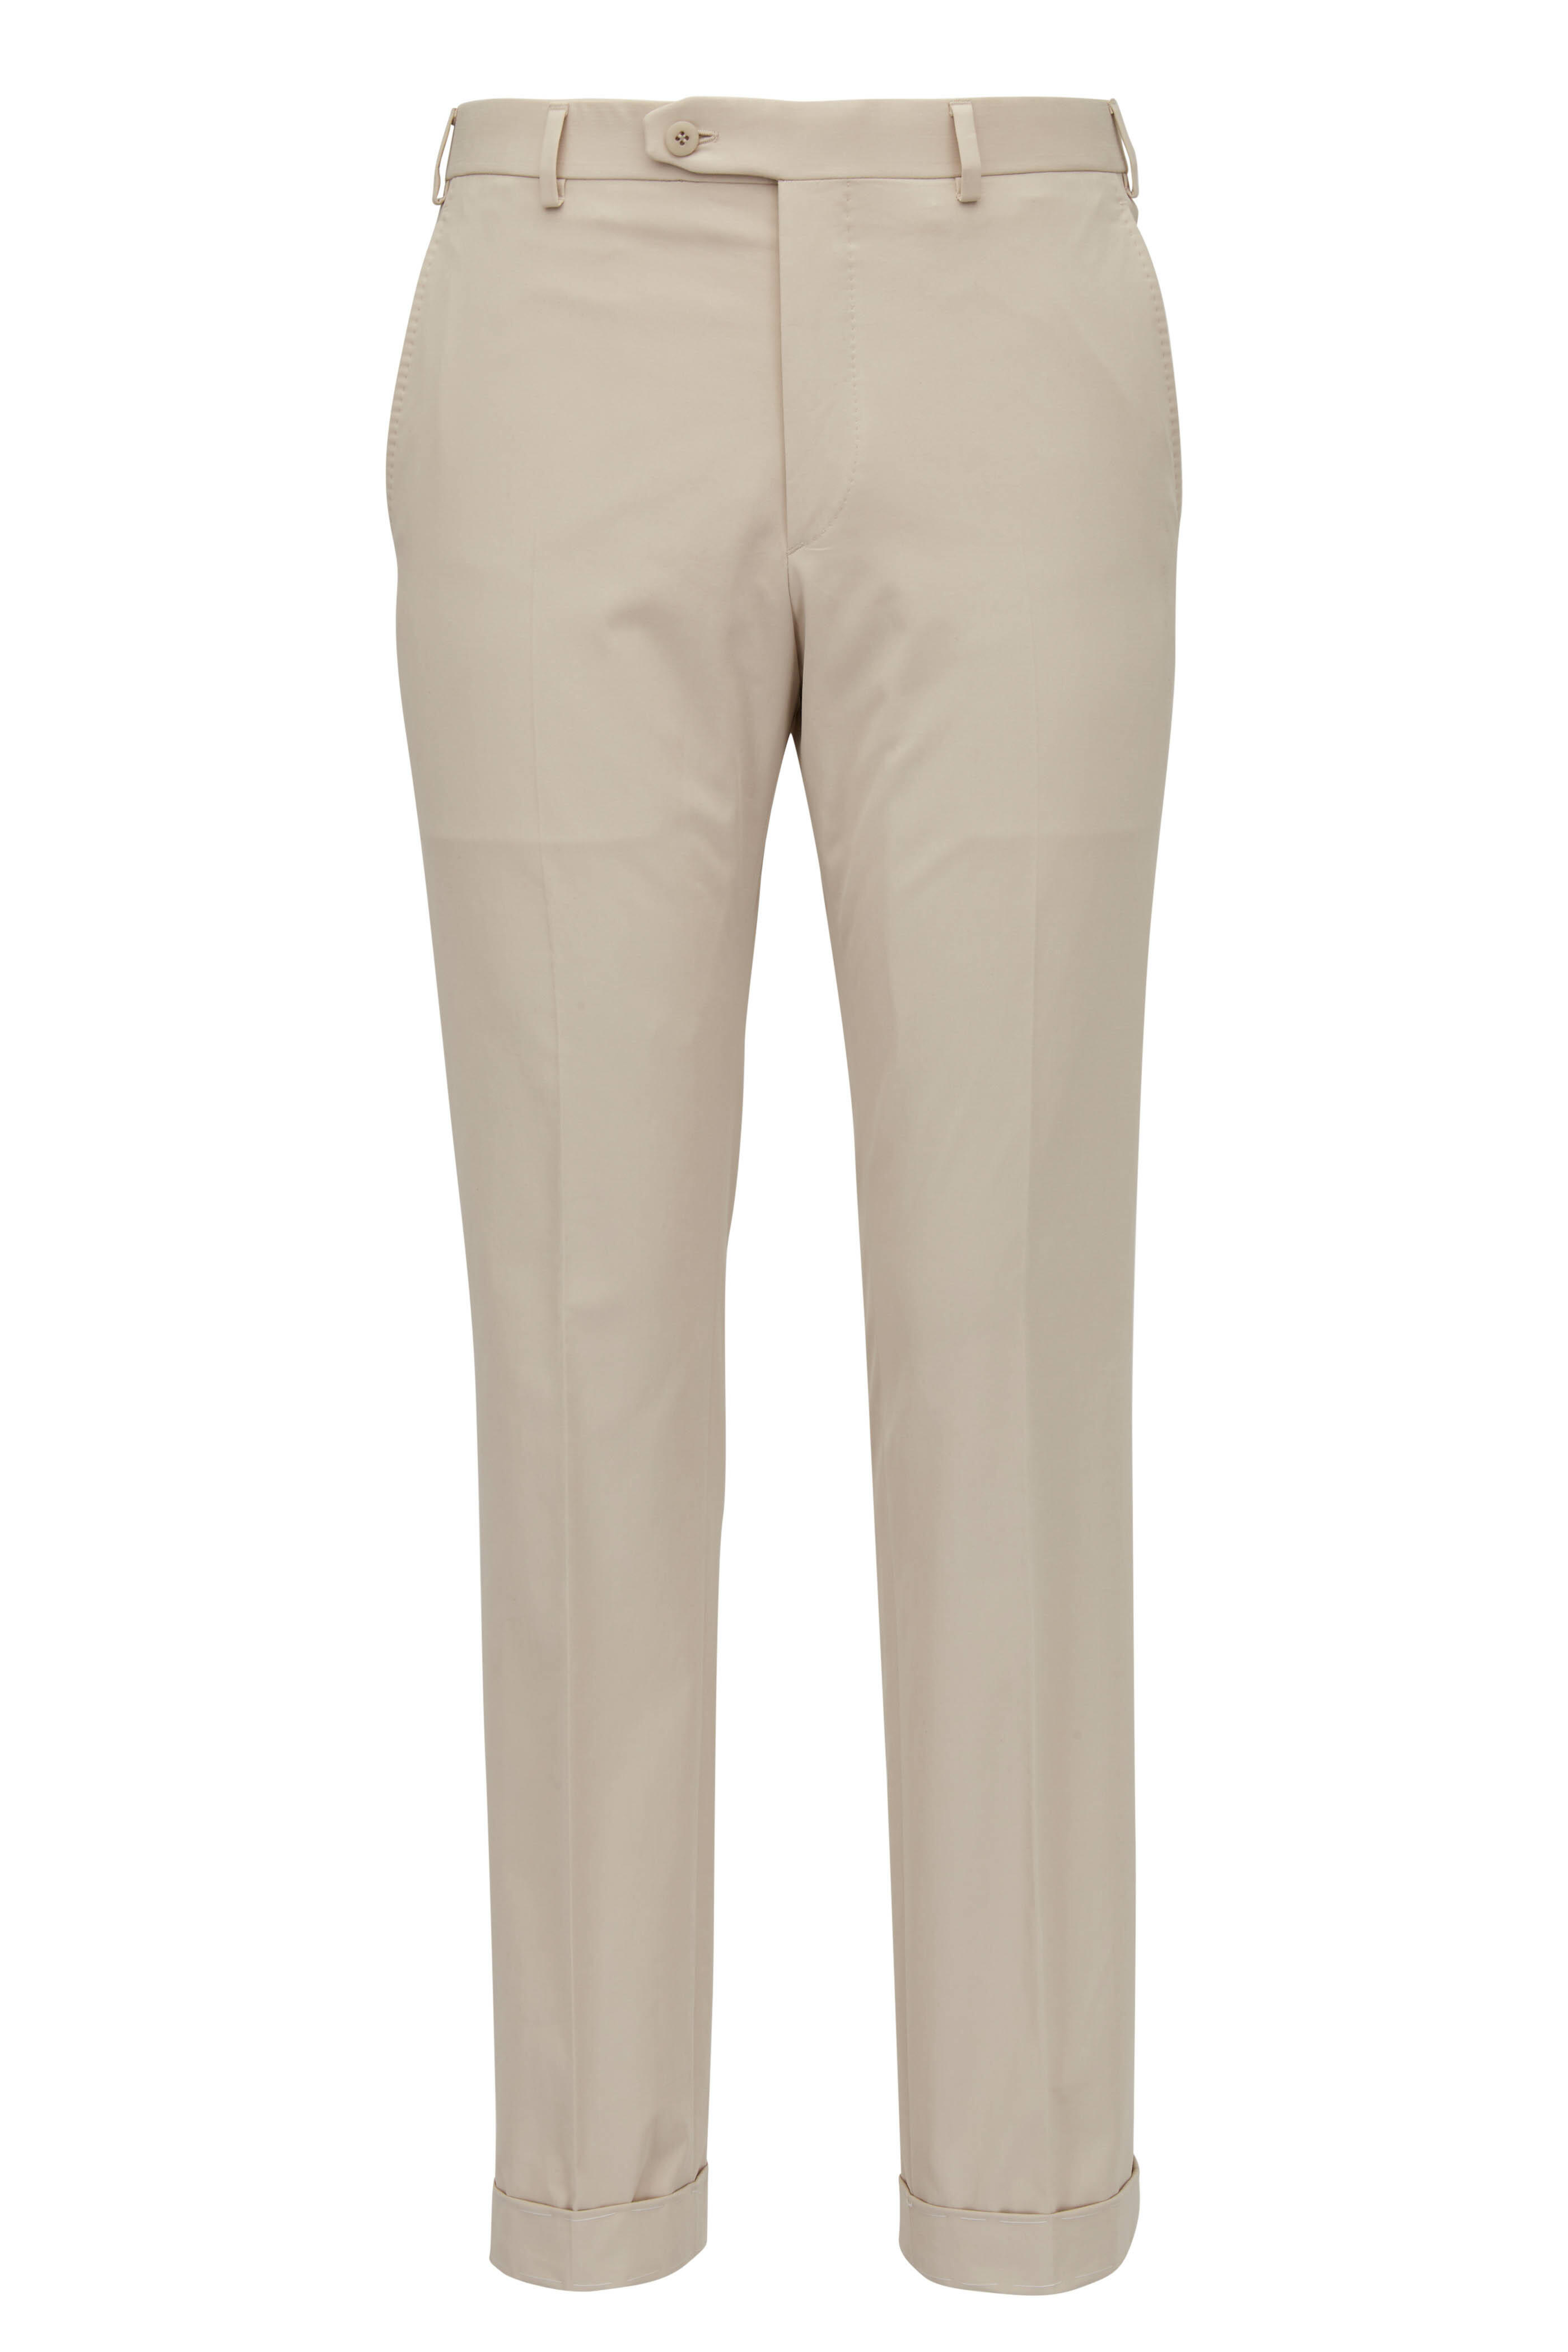 Brioni - Beige Cotton & Cashmere Suit | Mitchell Stores